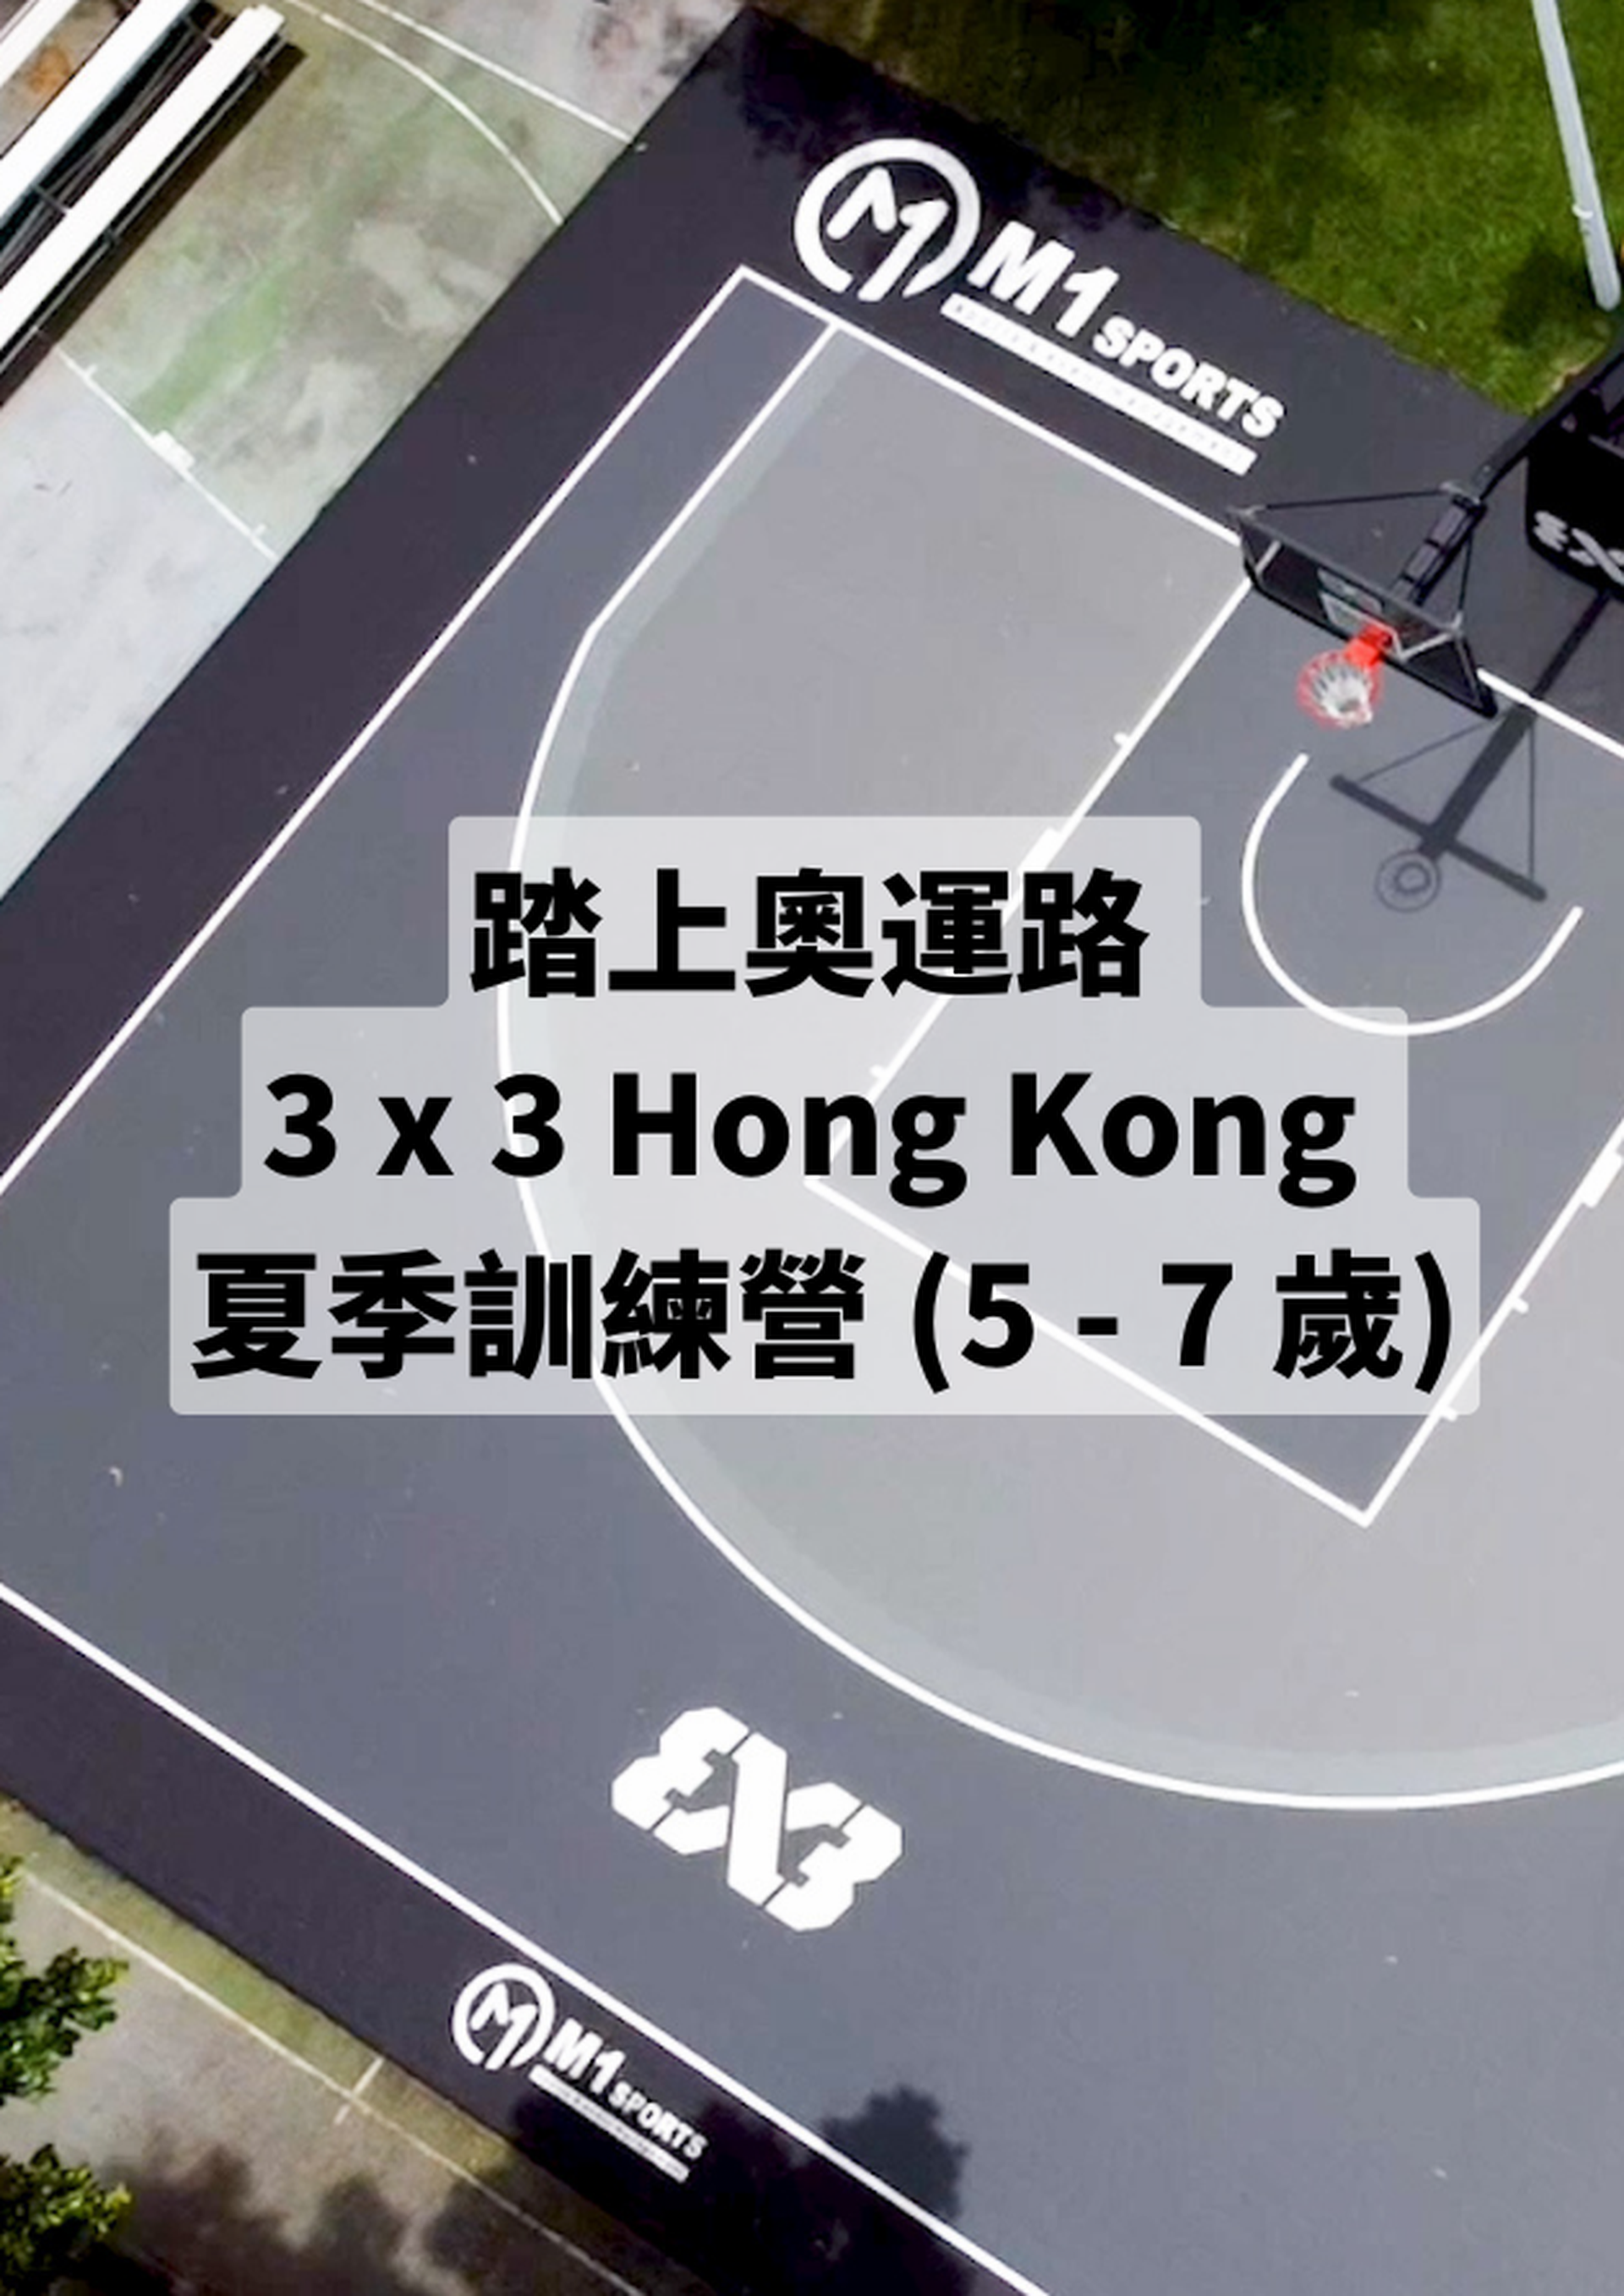 踏上奧運路 3x3 Hong Kong 夏季訓練營 (5 - 7 歲)